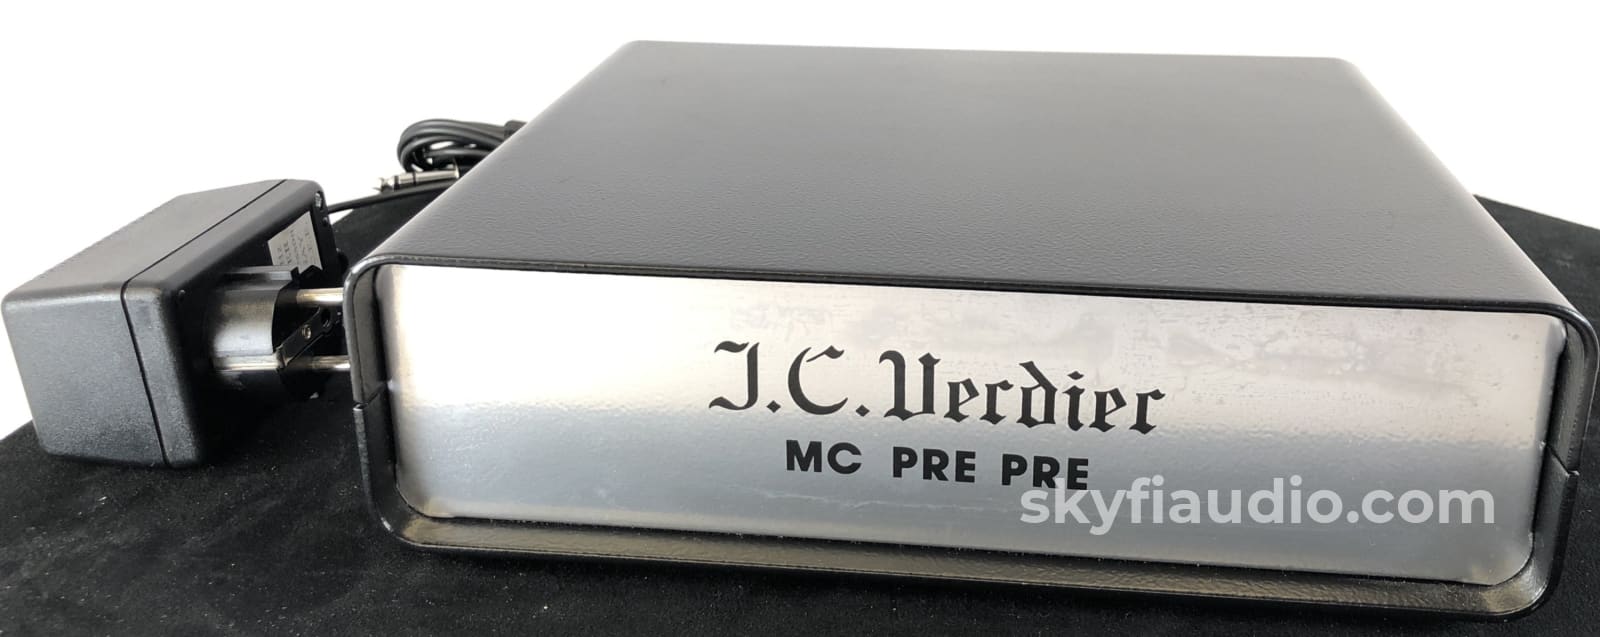 Jc Verdier Mc Pre Mm To Step-Up Phono Preamp 220V Or 110V Super Rare Preamplifier